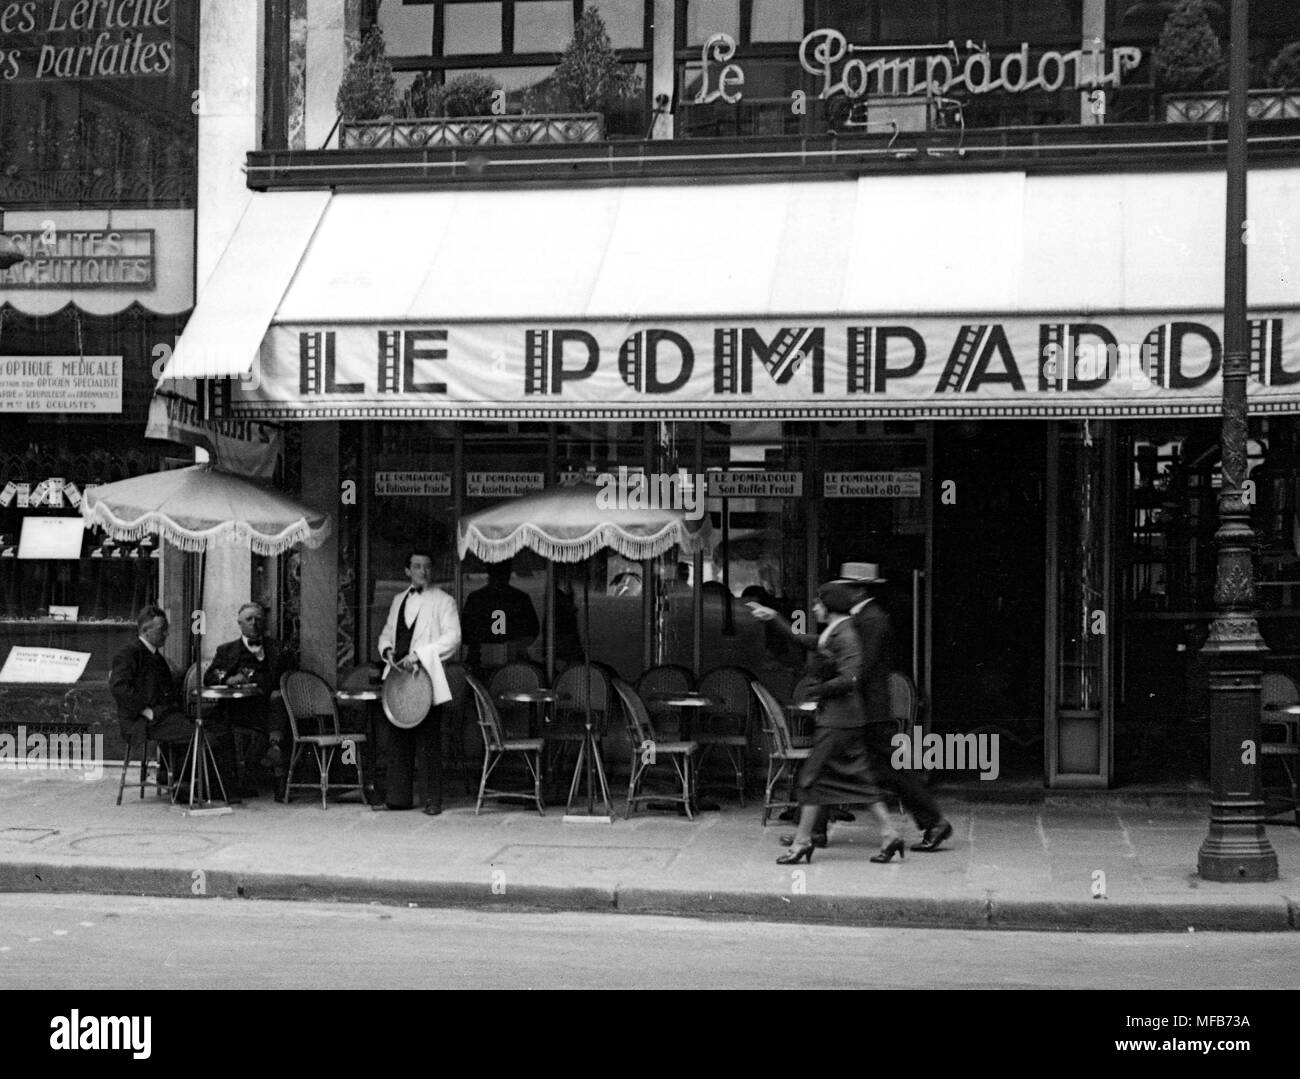 Paris France 1934 Le Pompadour cafe restaurant street scene Stock Photo